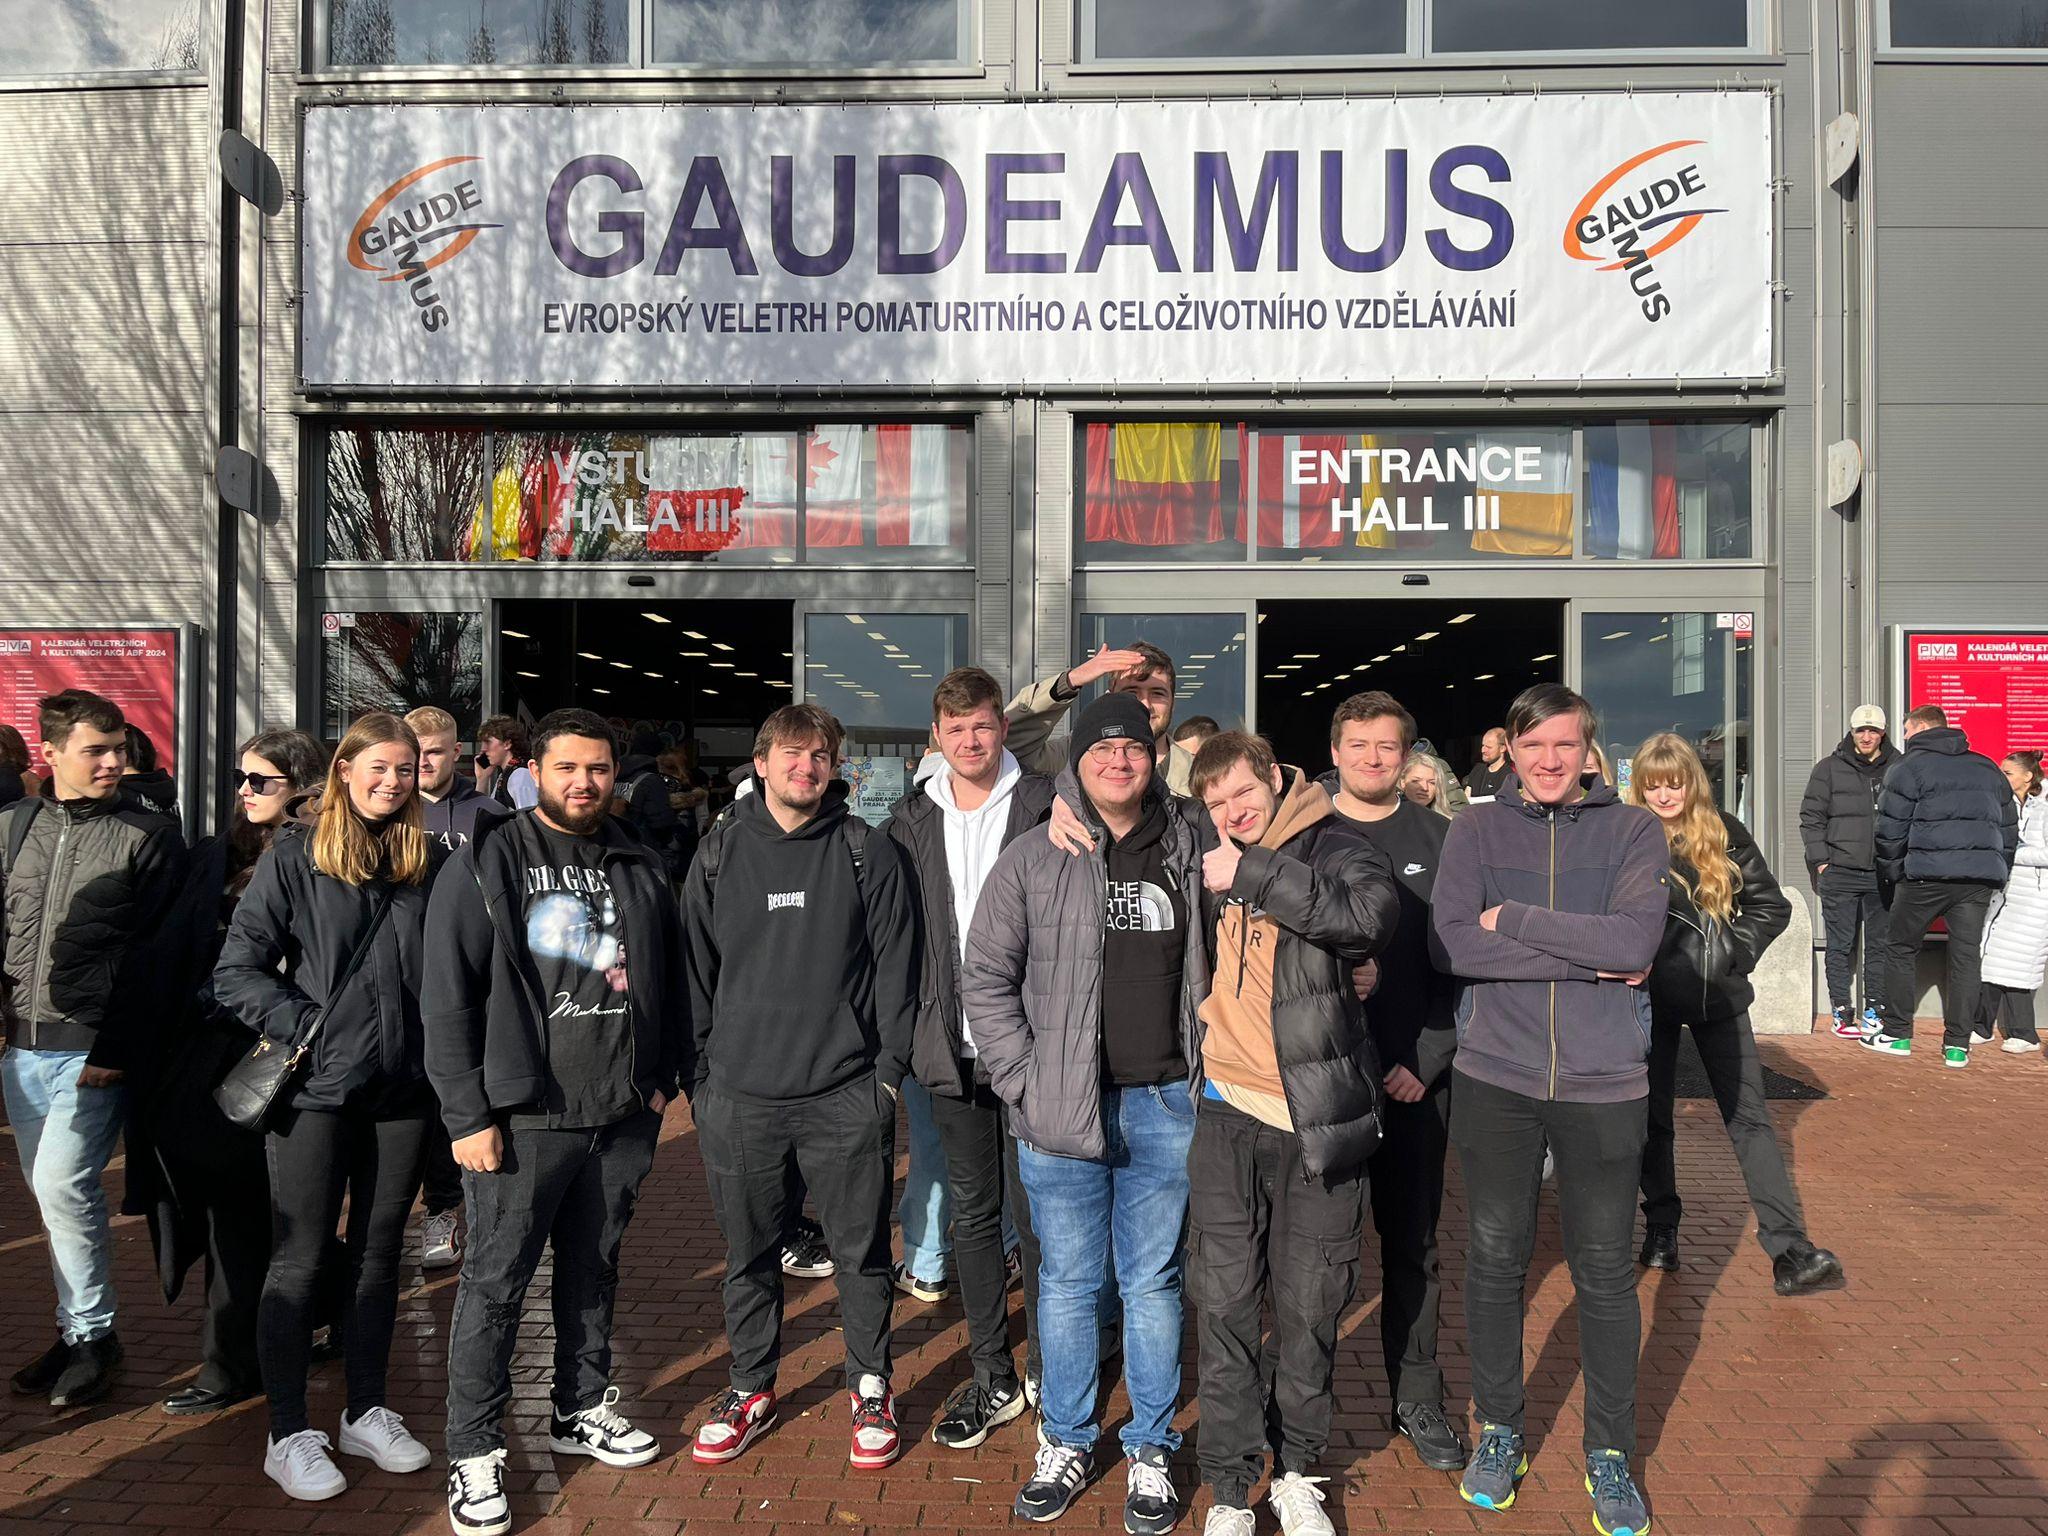  Gaudeamus, evropský veletrh pomaturitního a celoživotního vzdělávání